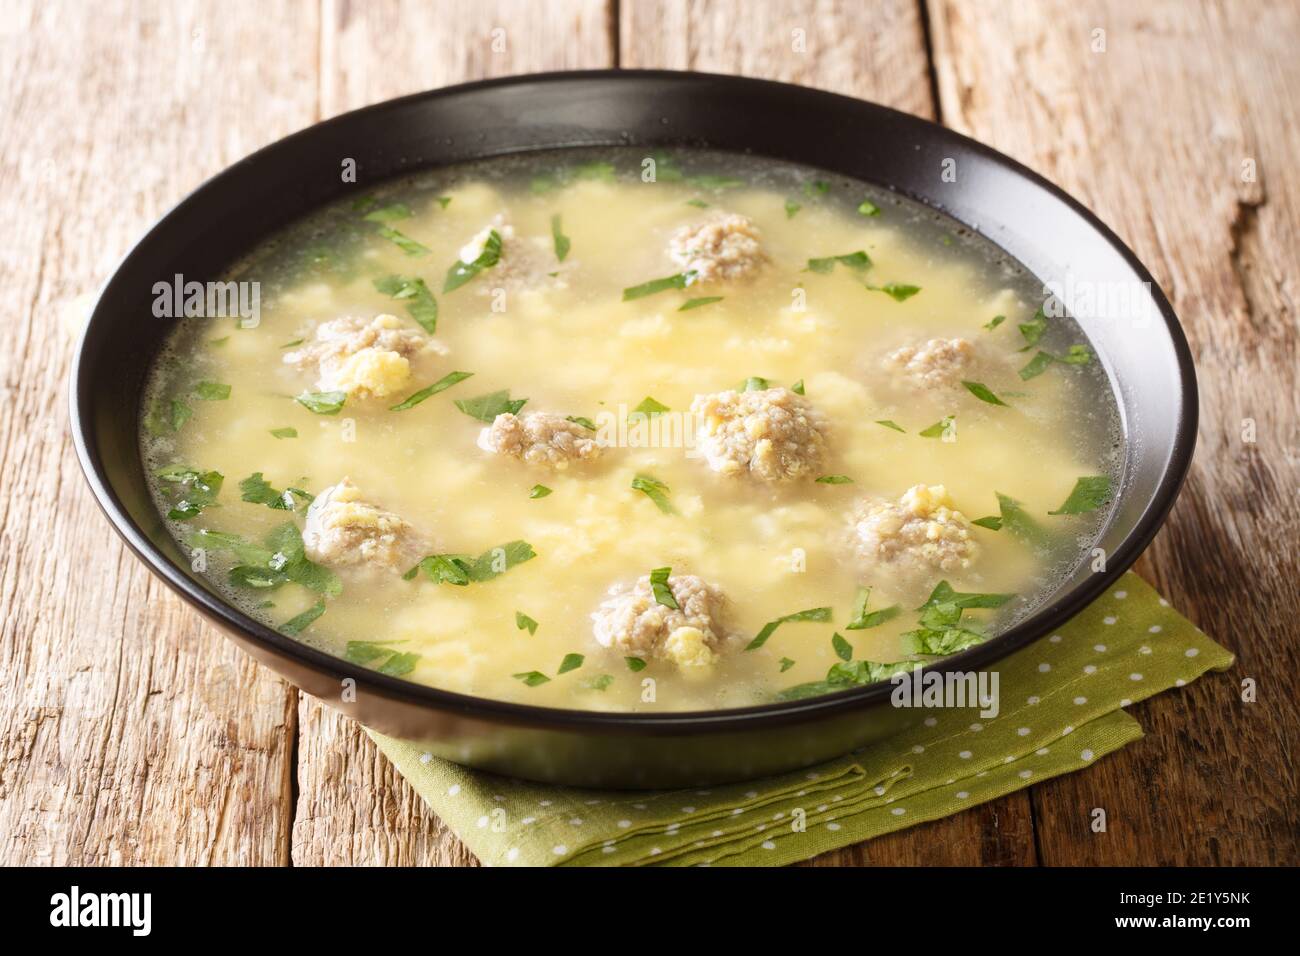 Sciusceddu est une soupe italienne de fête avec les boulettes de viande les plus légères et les plus tendres dans une soupe aux œufs crémeuse et réconfortante à proximité de l'assiette sur la table. horiz Banque D'Images